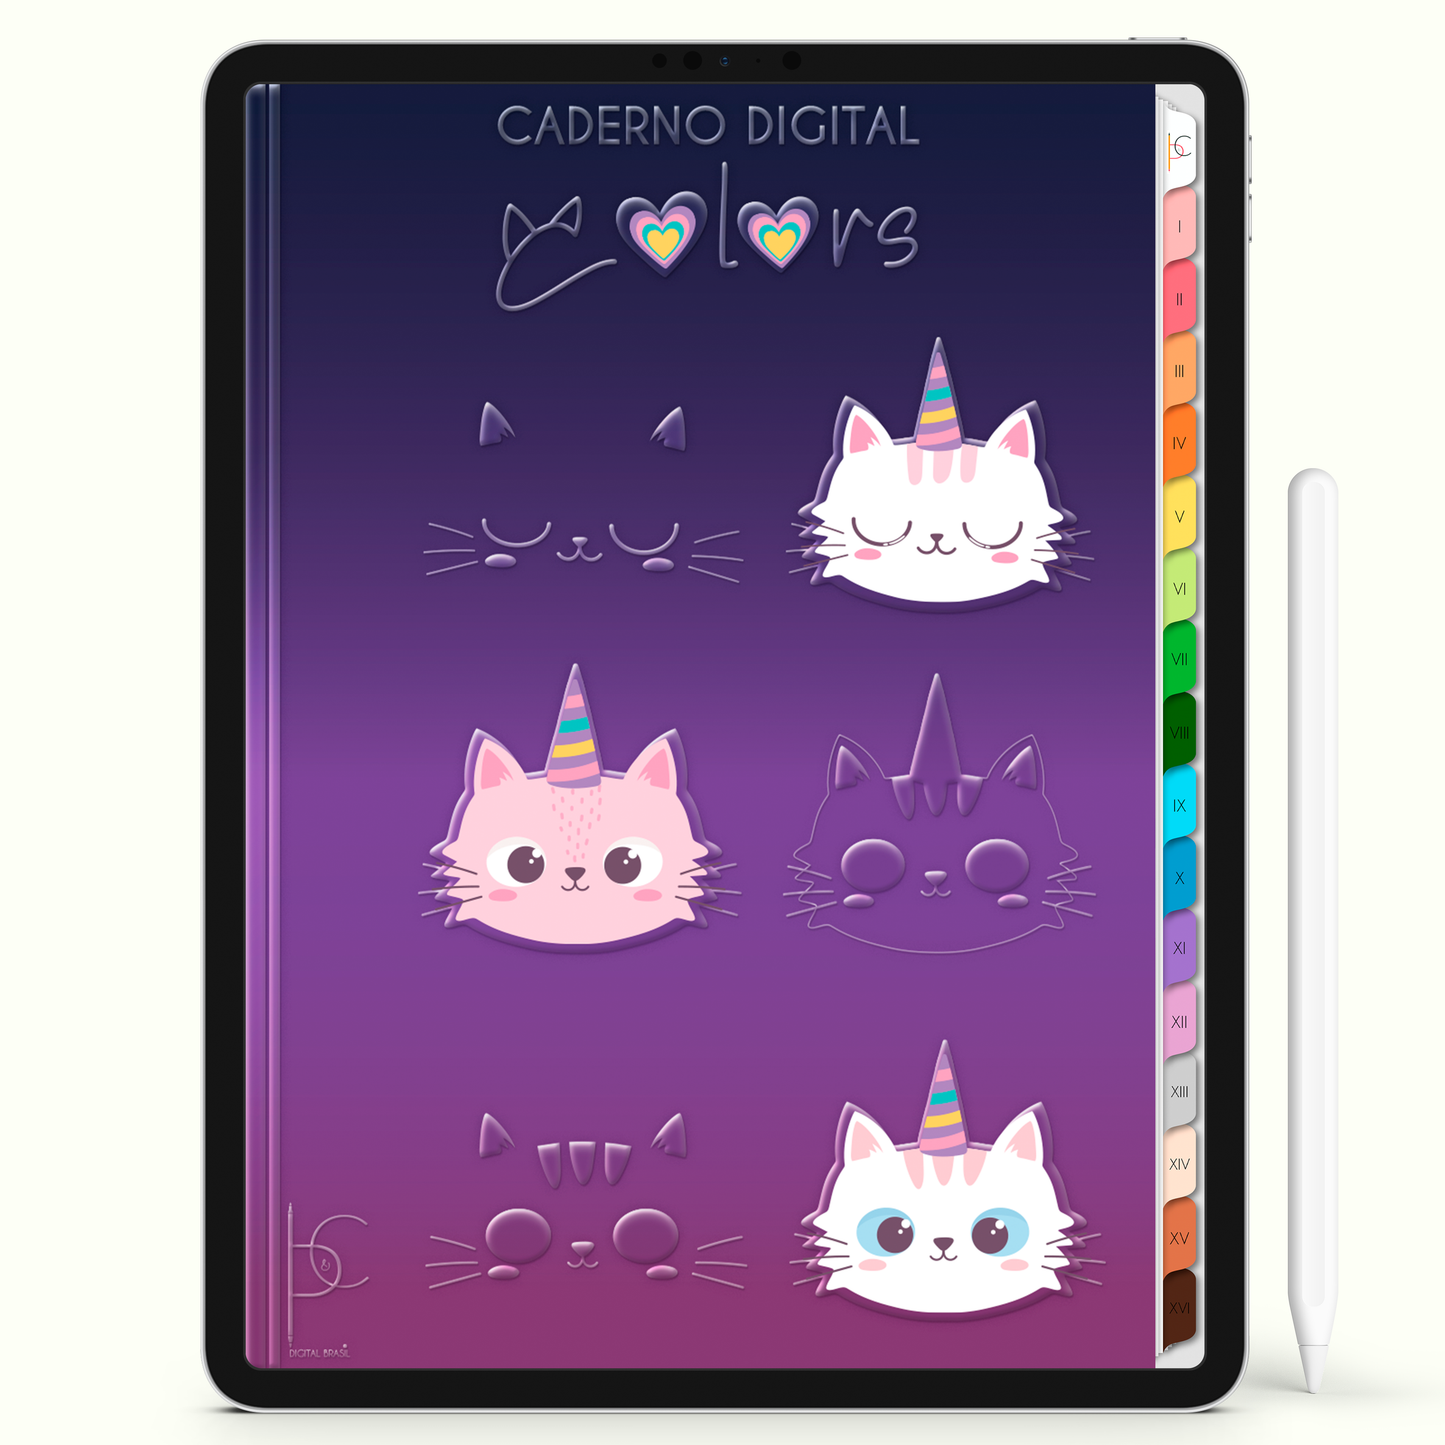 Caderno Digital Colors Gatunicôrnios 16 Matérias • Para iPad e Tablet Android • Download instantâneo • Sustentável